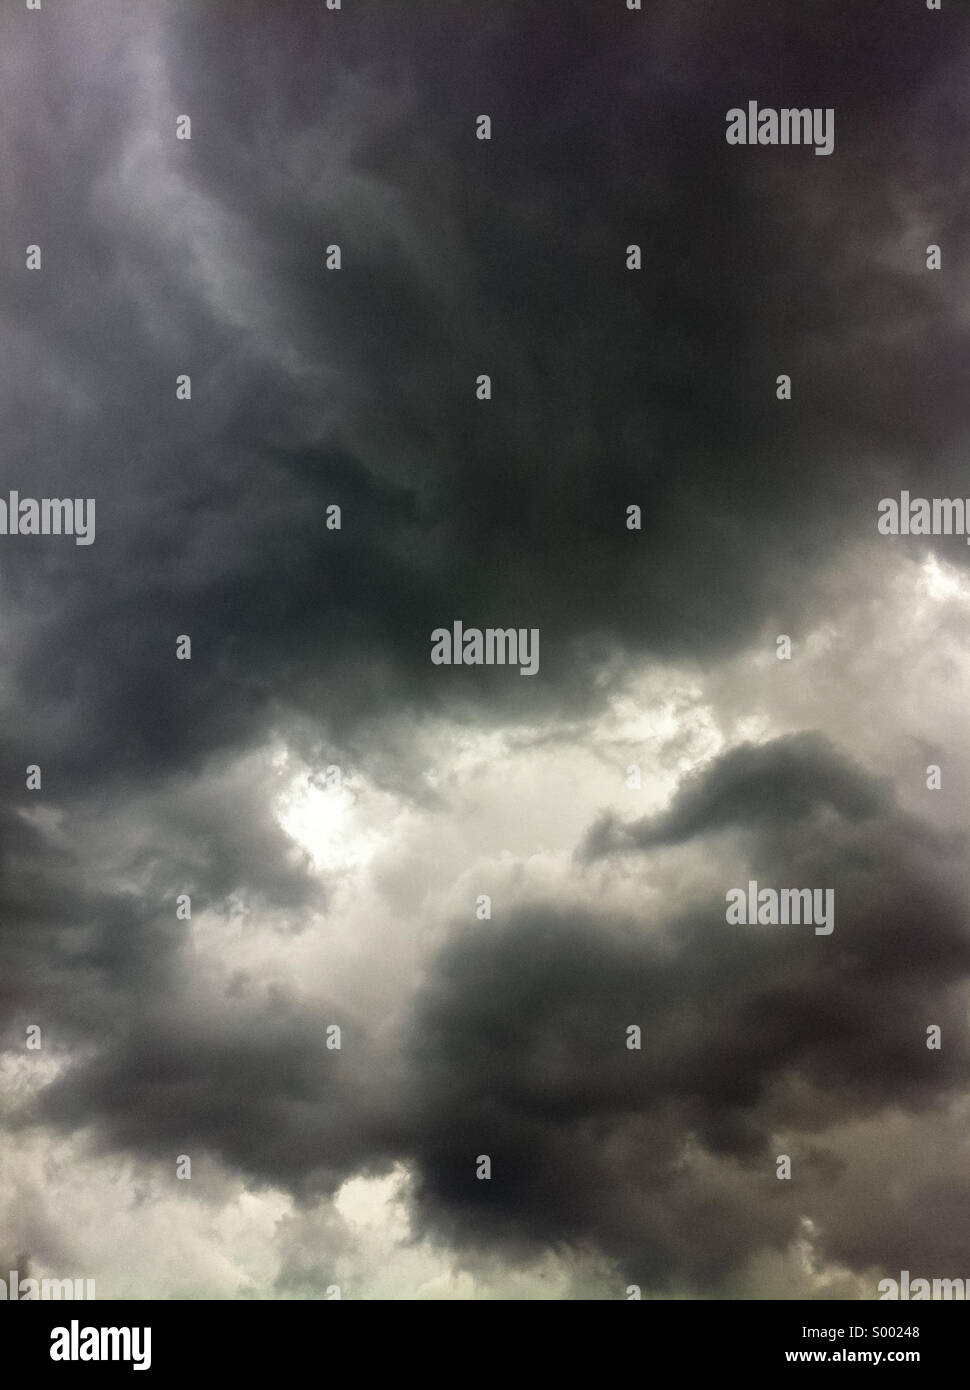 Sonnenlicht späht durch dunkle, Vorahnung Wolken in einem gewalttätigen, stürmischen Himmel. Stockfoto